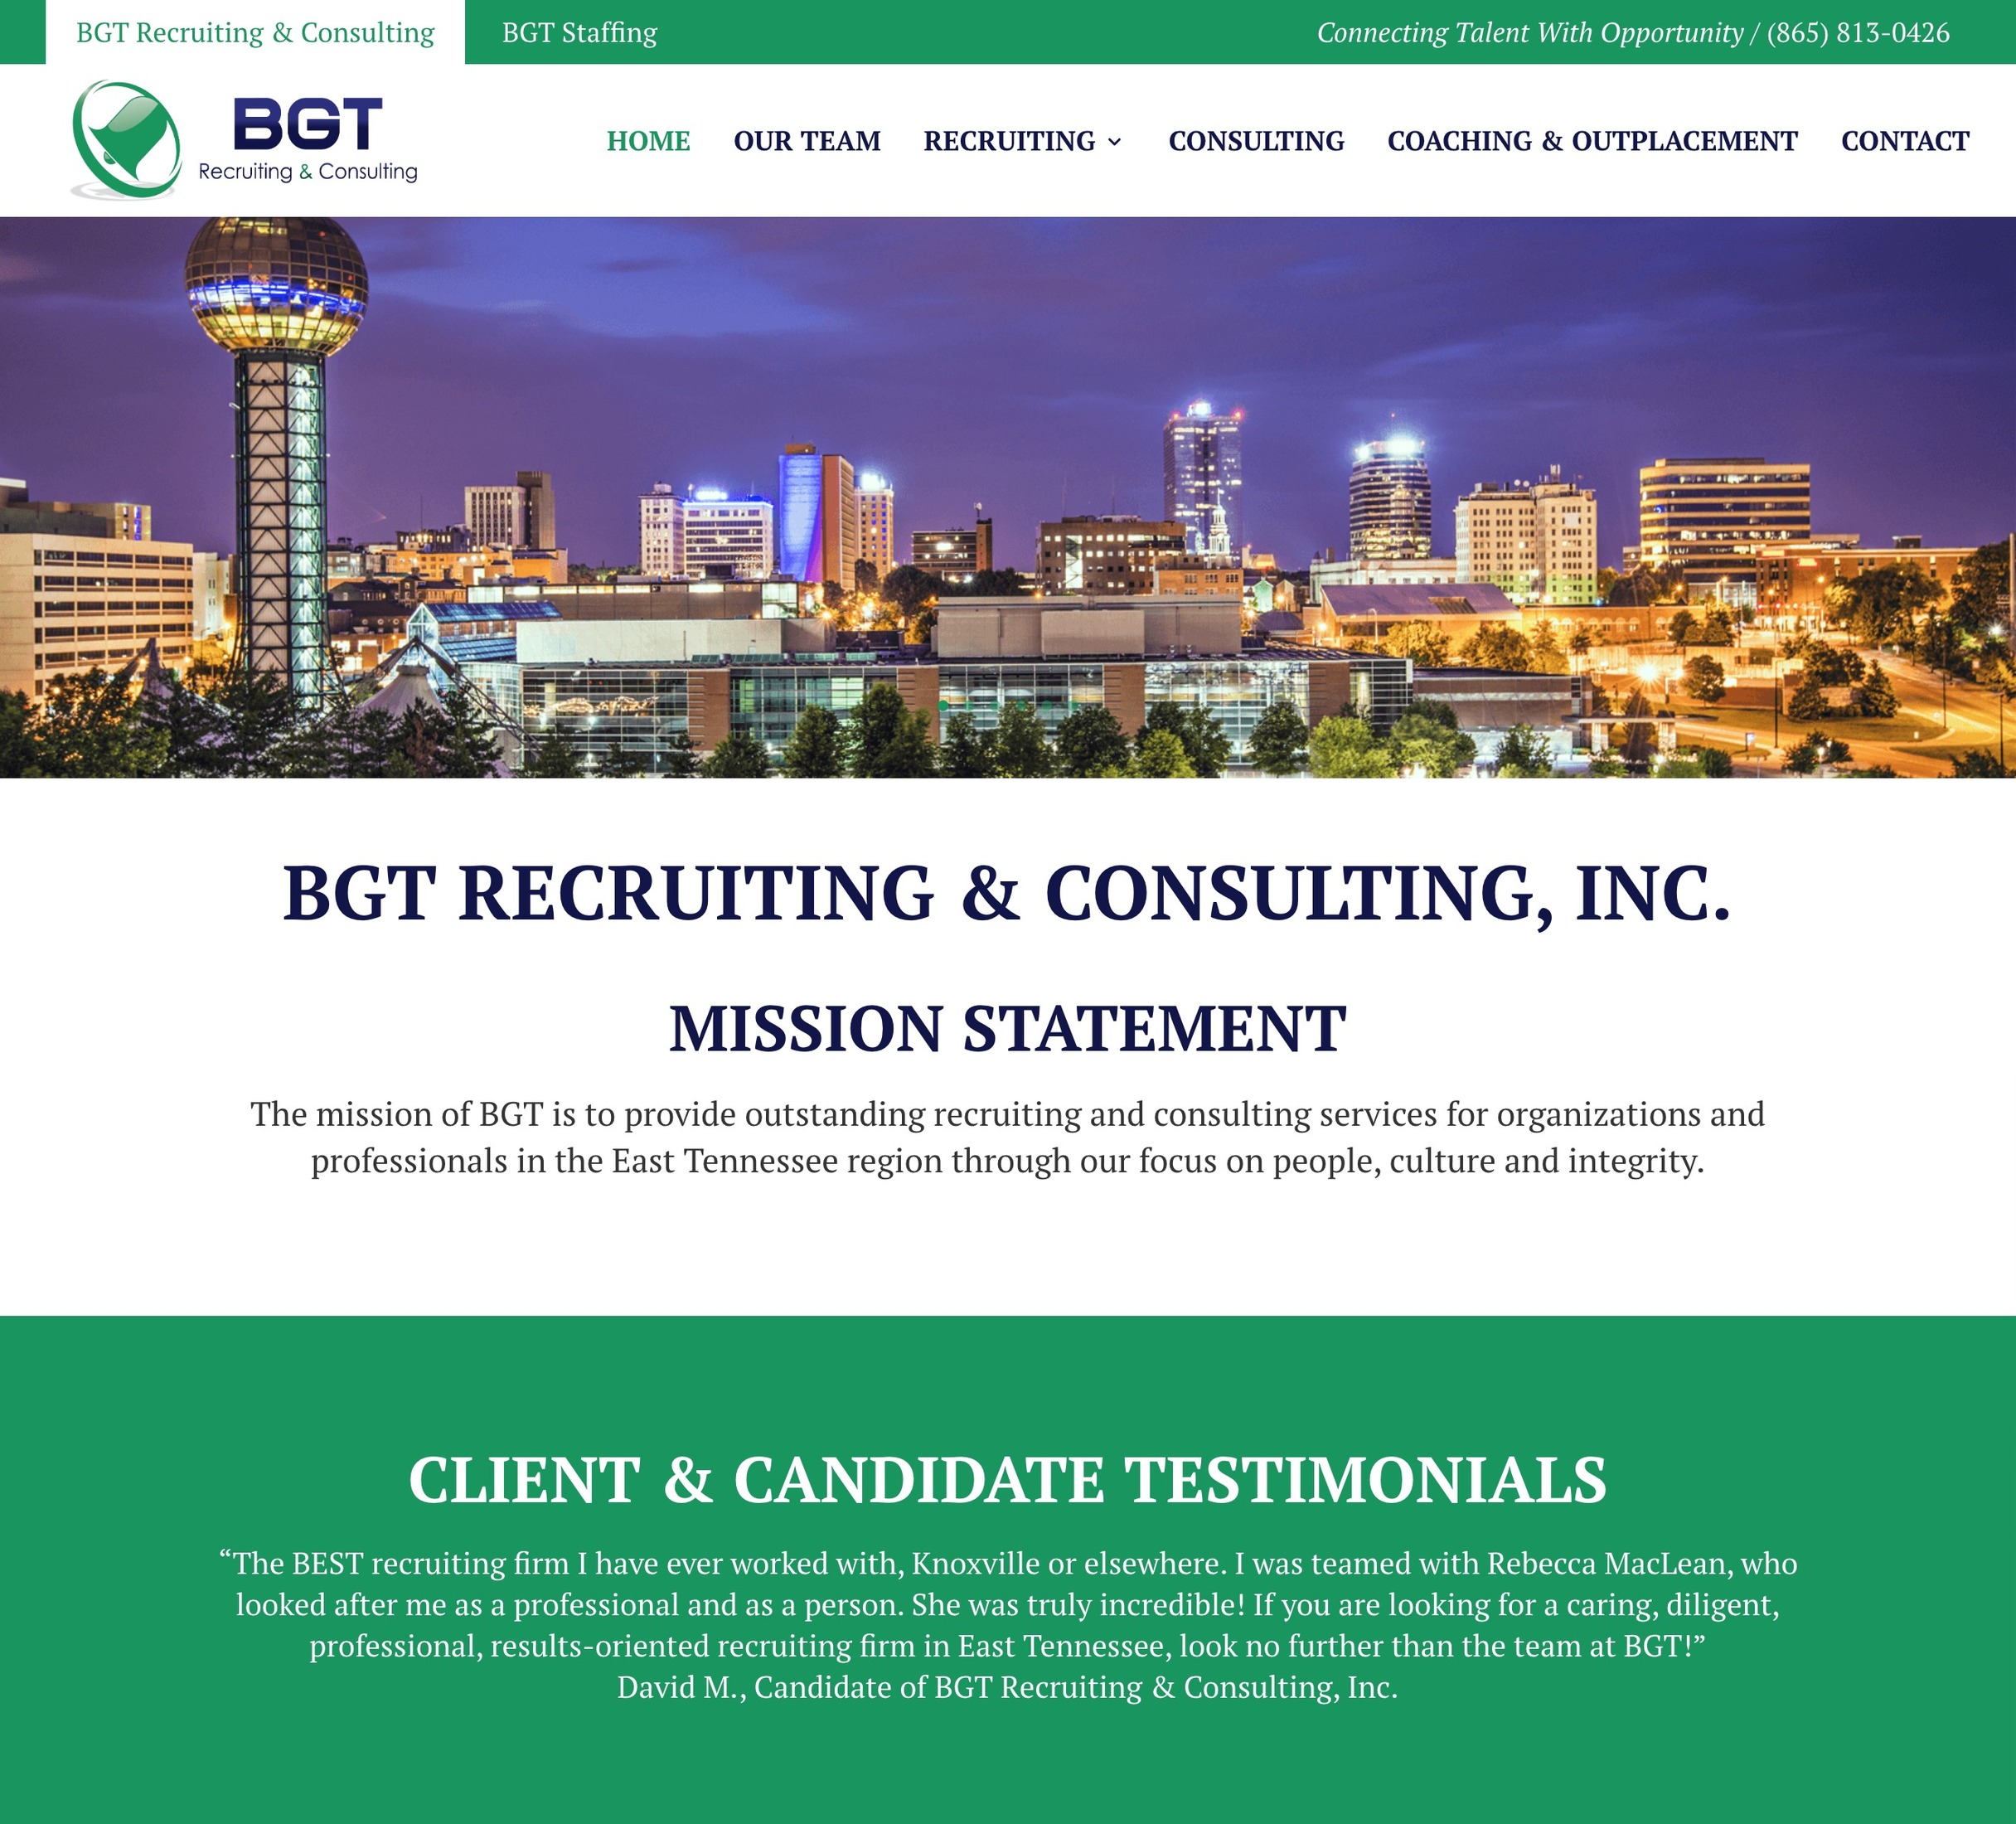 BGT Recruiting & Consulting, Inc